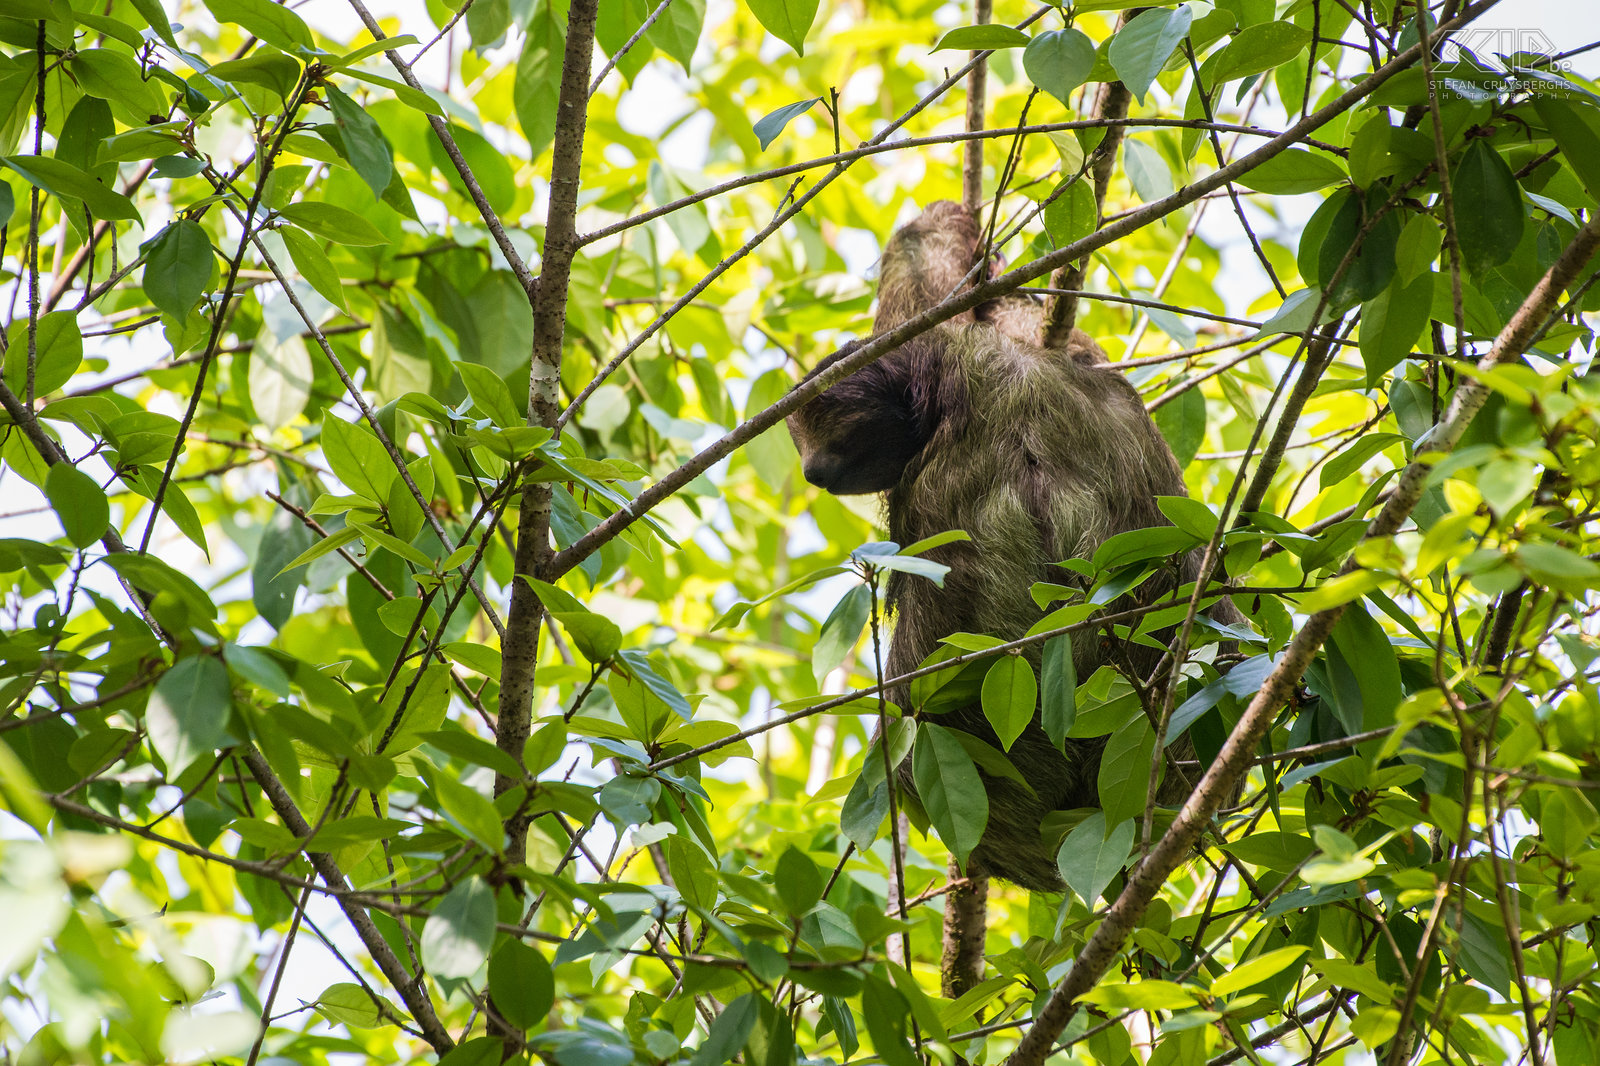 La Selva - Drievingerige luiaard Een drievingerige luiaard (three-toed sloth, bradypus) in de jungle van La Selva Biological Station in Costa Rica. Deze luiaards hebben een korte staart van 6-7 cm en drie klauwen aan elke arm. Hun lichaam is gemaakt om te hangen en ze bewegen ontzettend traag. Ze bewegen tussen verschillende bomen tot vier keer per dag, maar ze hebben meestal een voorkeur voor een bepaalde soort boom.<br />
 Stefan Cruysberghs